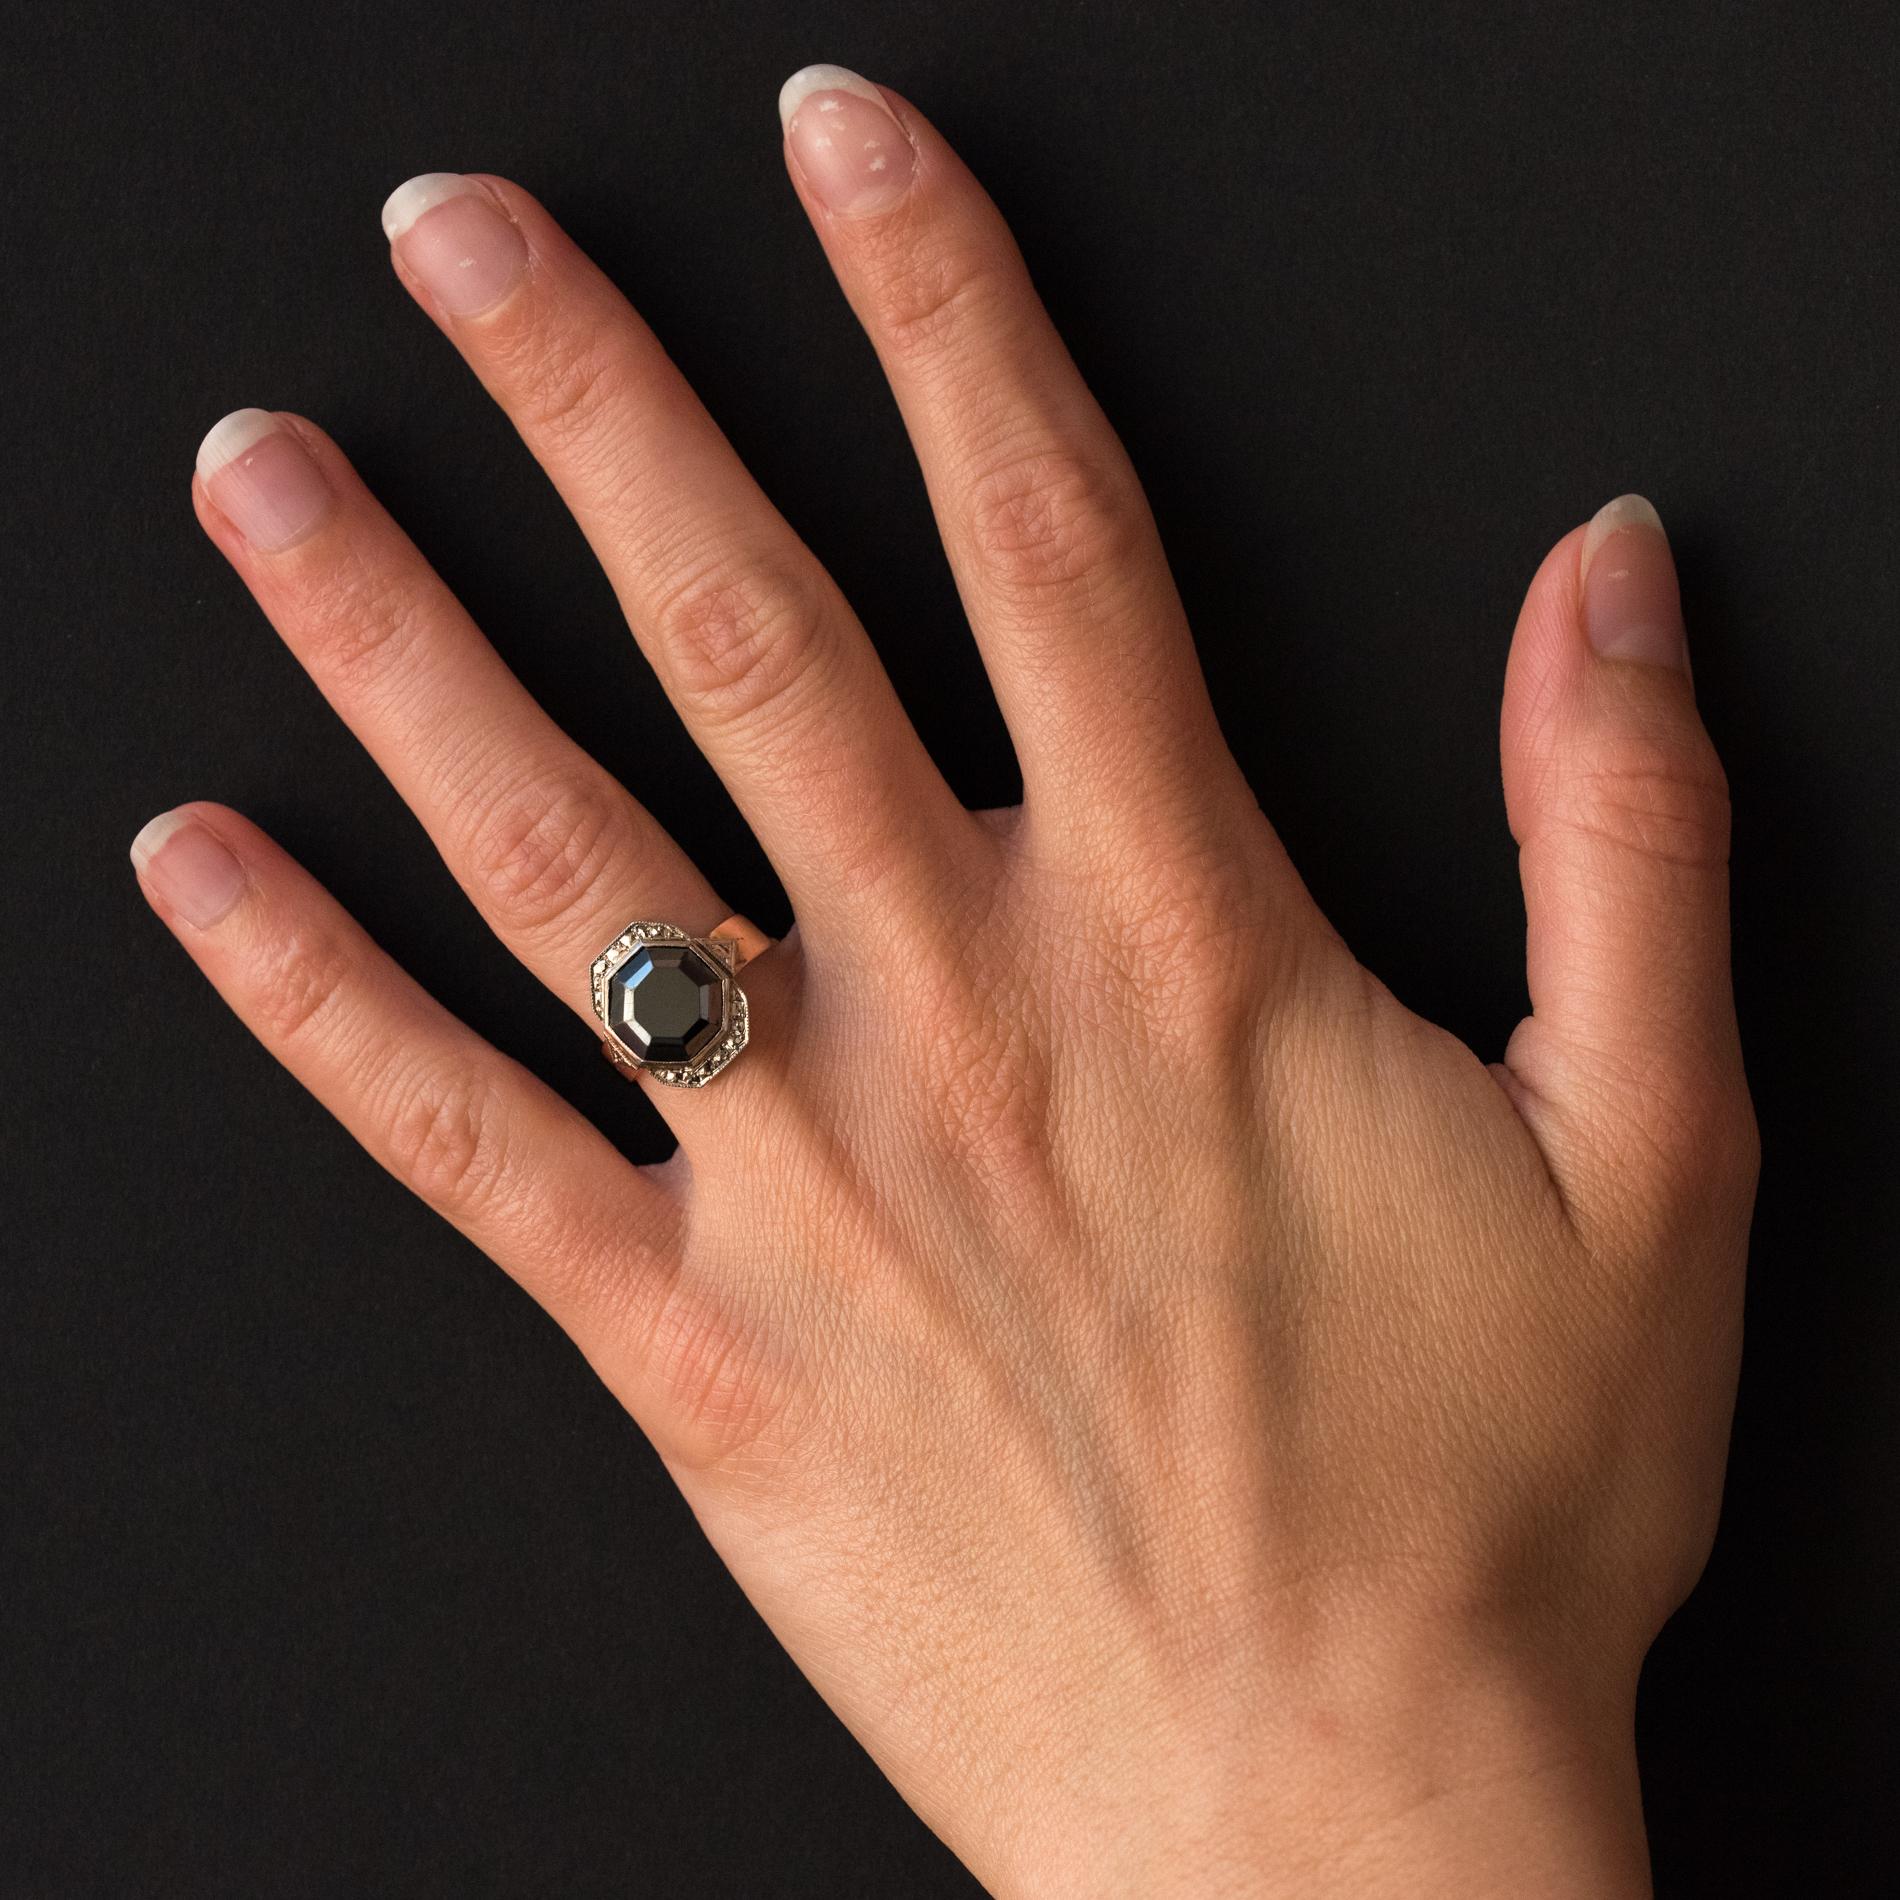 Ring aus 18 Karat Roségold.
Schöne antike Ring, ist es geschlossen in der Mitte eines achteckigen Hämatit durch eine gemeißelte Dekoration imitiert Diamanten umgeben gesetzt. Auf beiden Seiten ist der Ringanfang mit zwei eingemeißelten dreieckigen